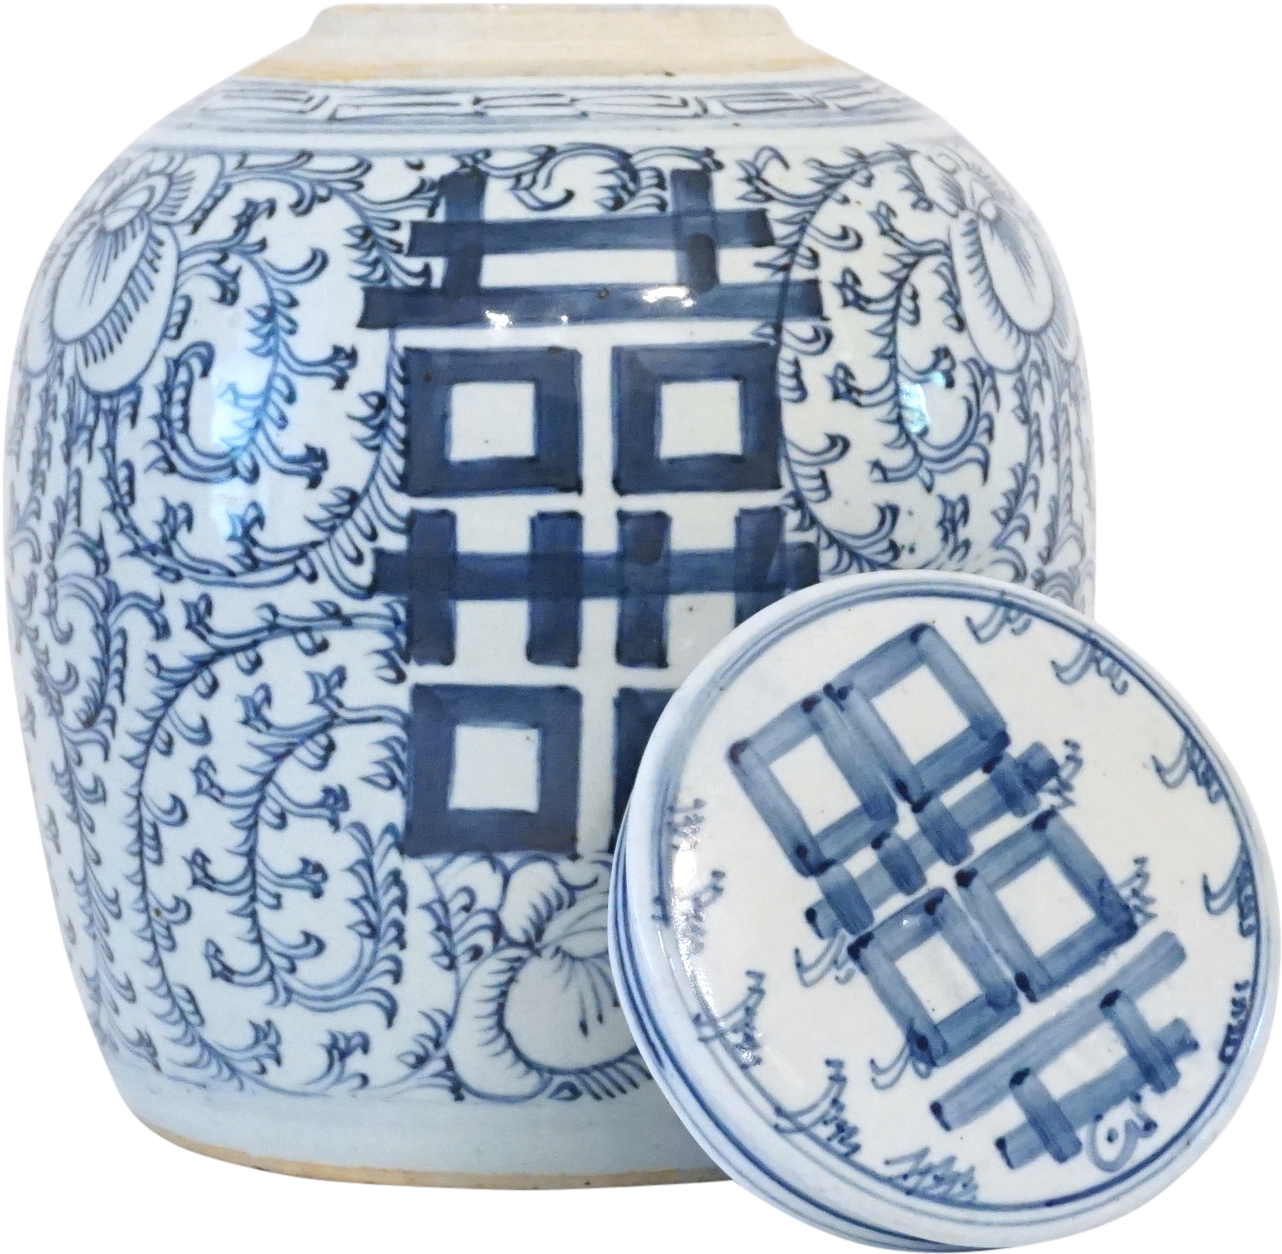 Vaso in ceramica doppia felicità, porcellana blu e bianca